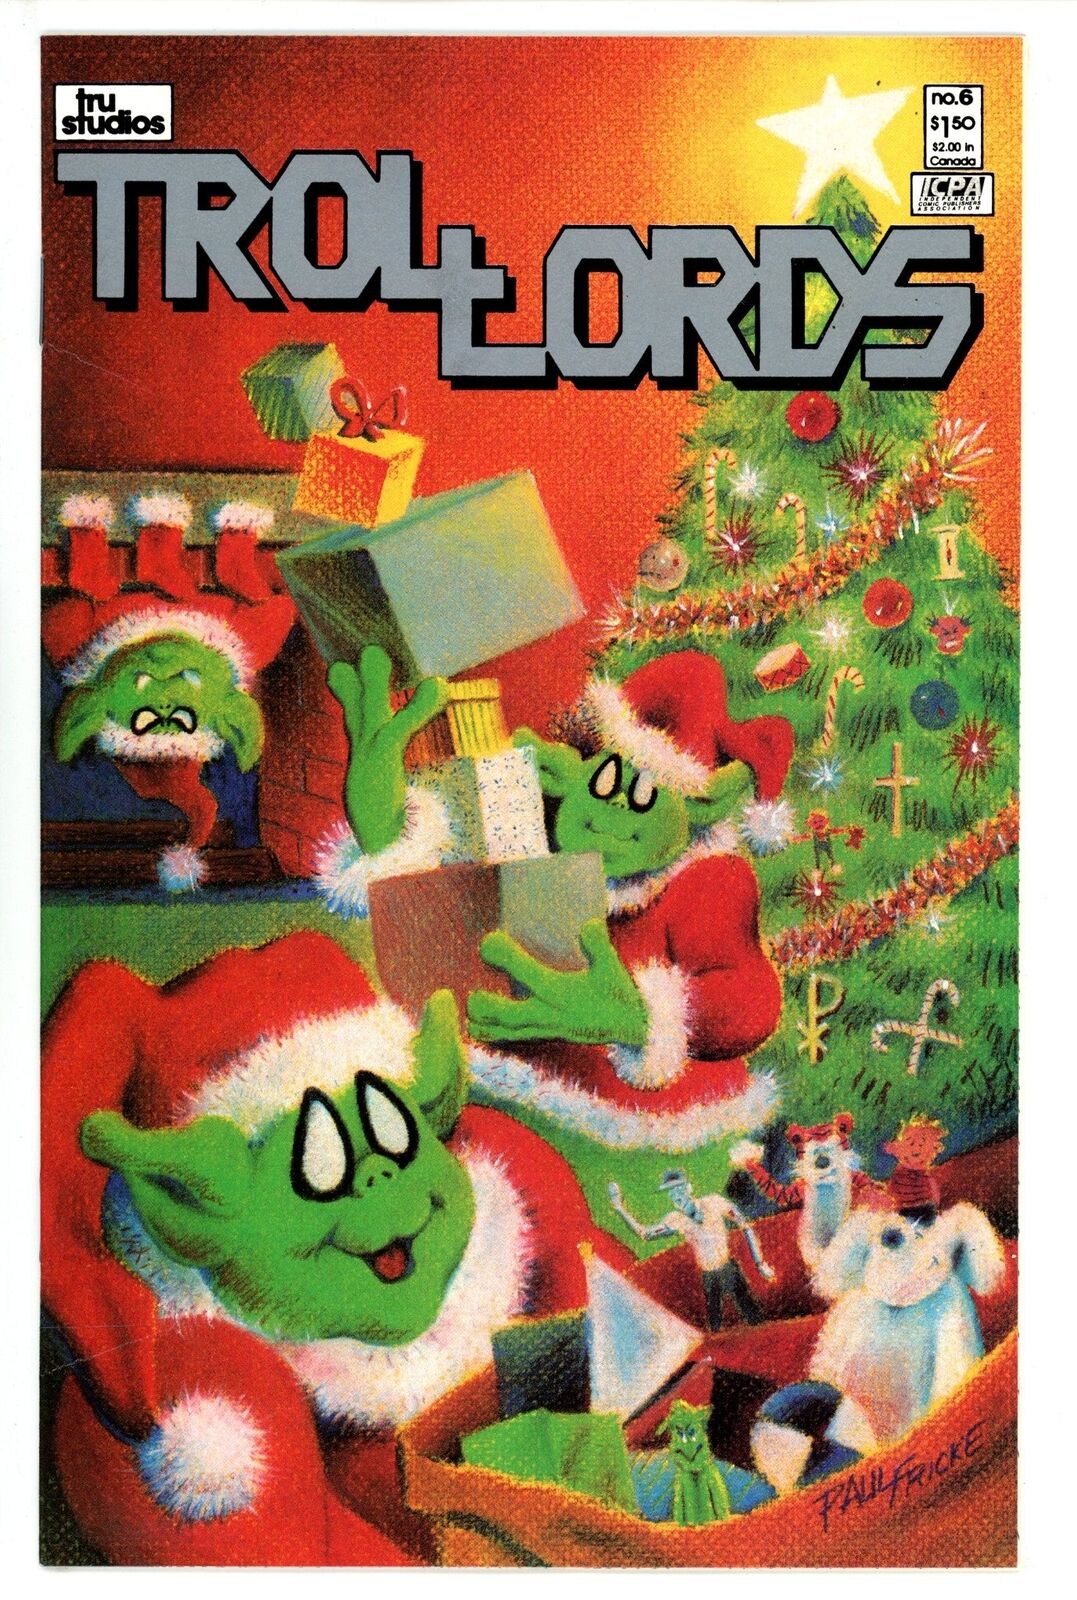 Trollords Vol 1 #6 Tru Studios (1986)